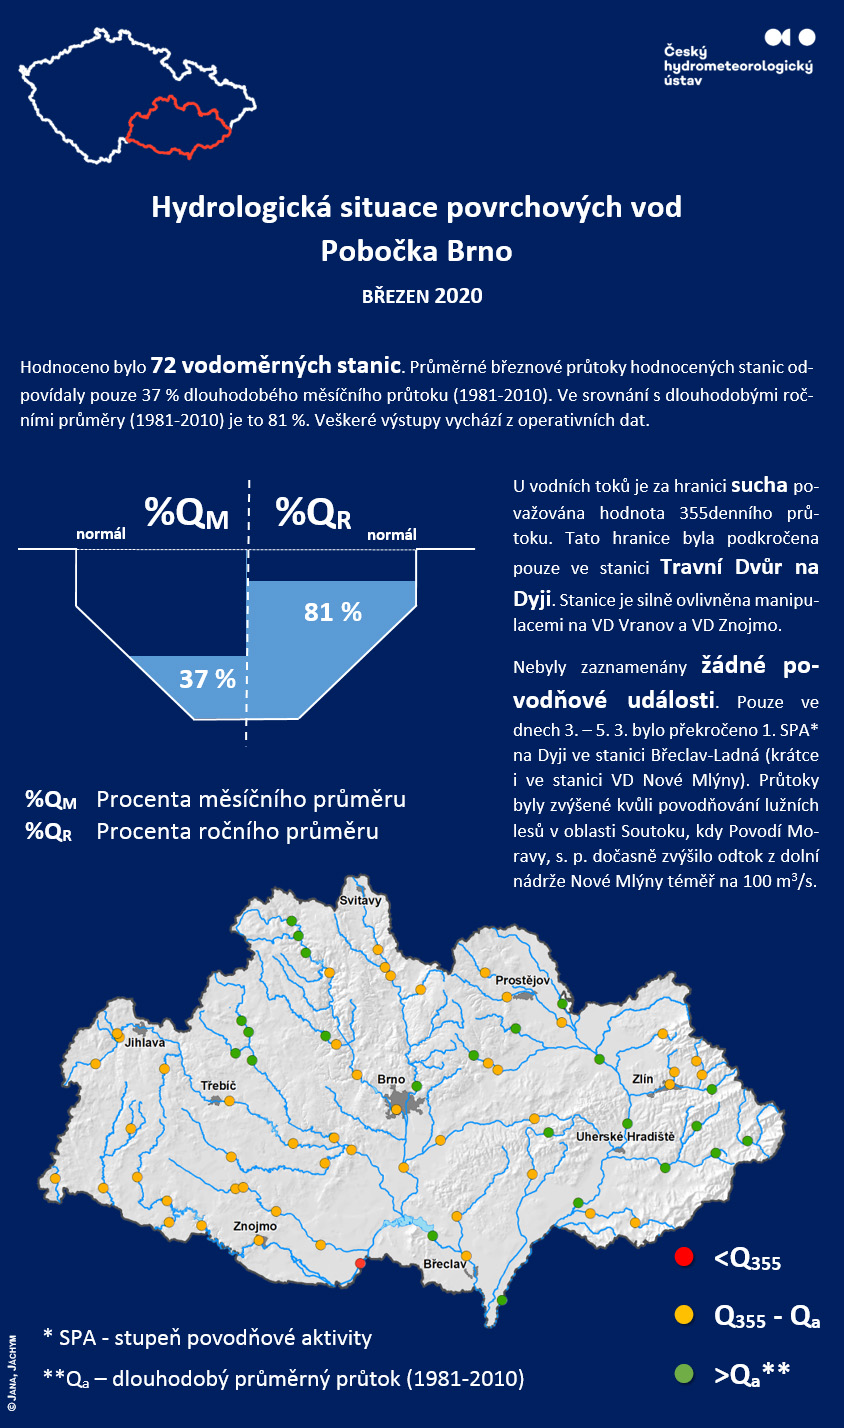 Hydrologická situace povrchových vod Pobočka Brno – březen 20202 min čtení